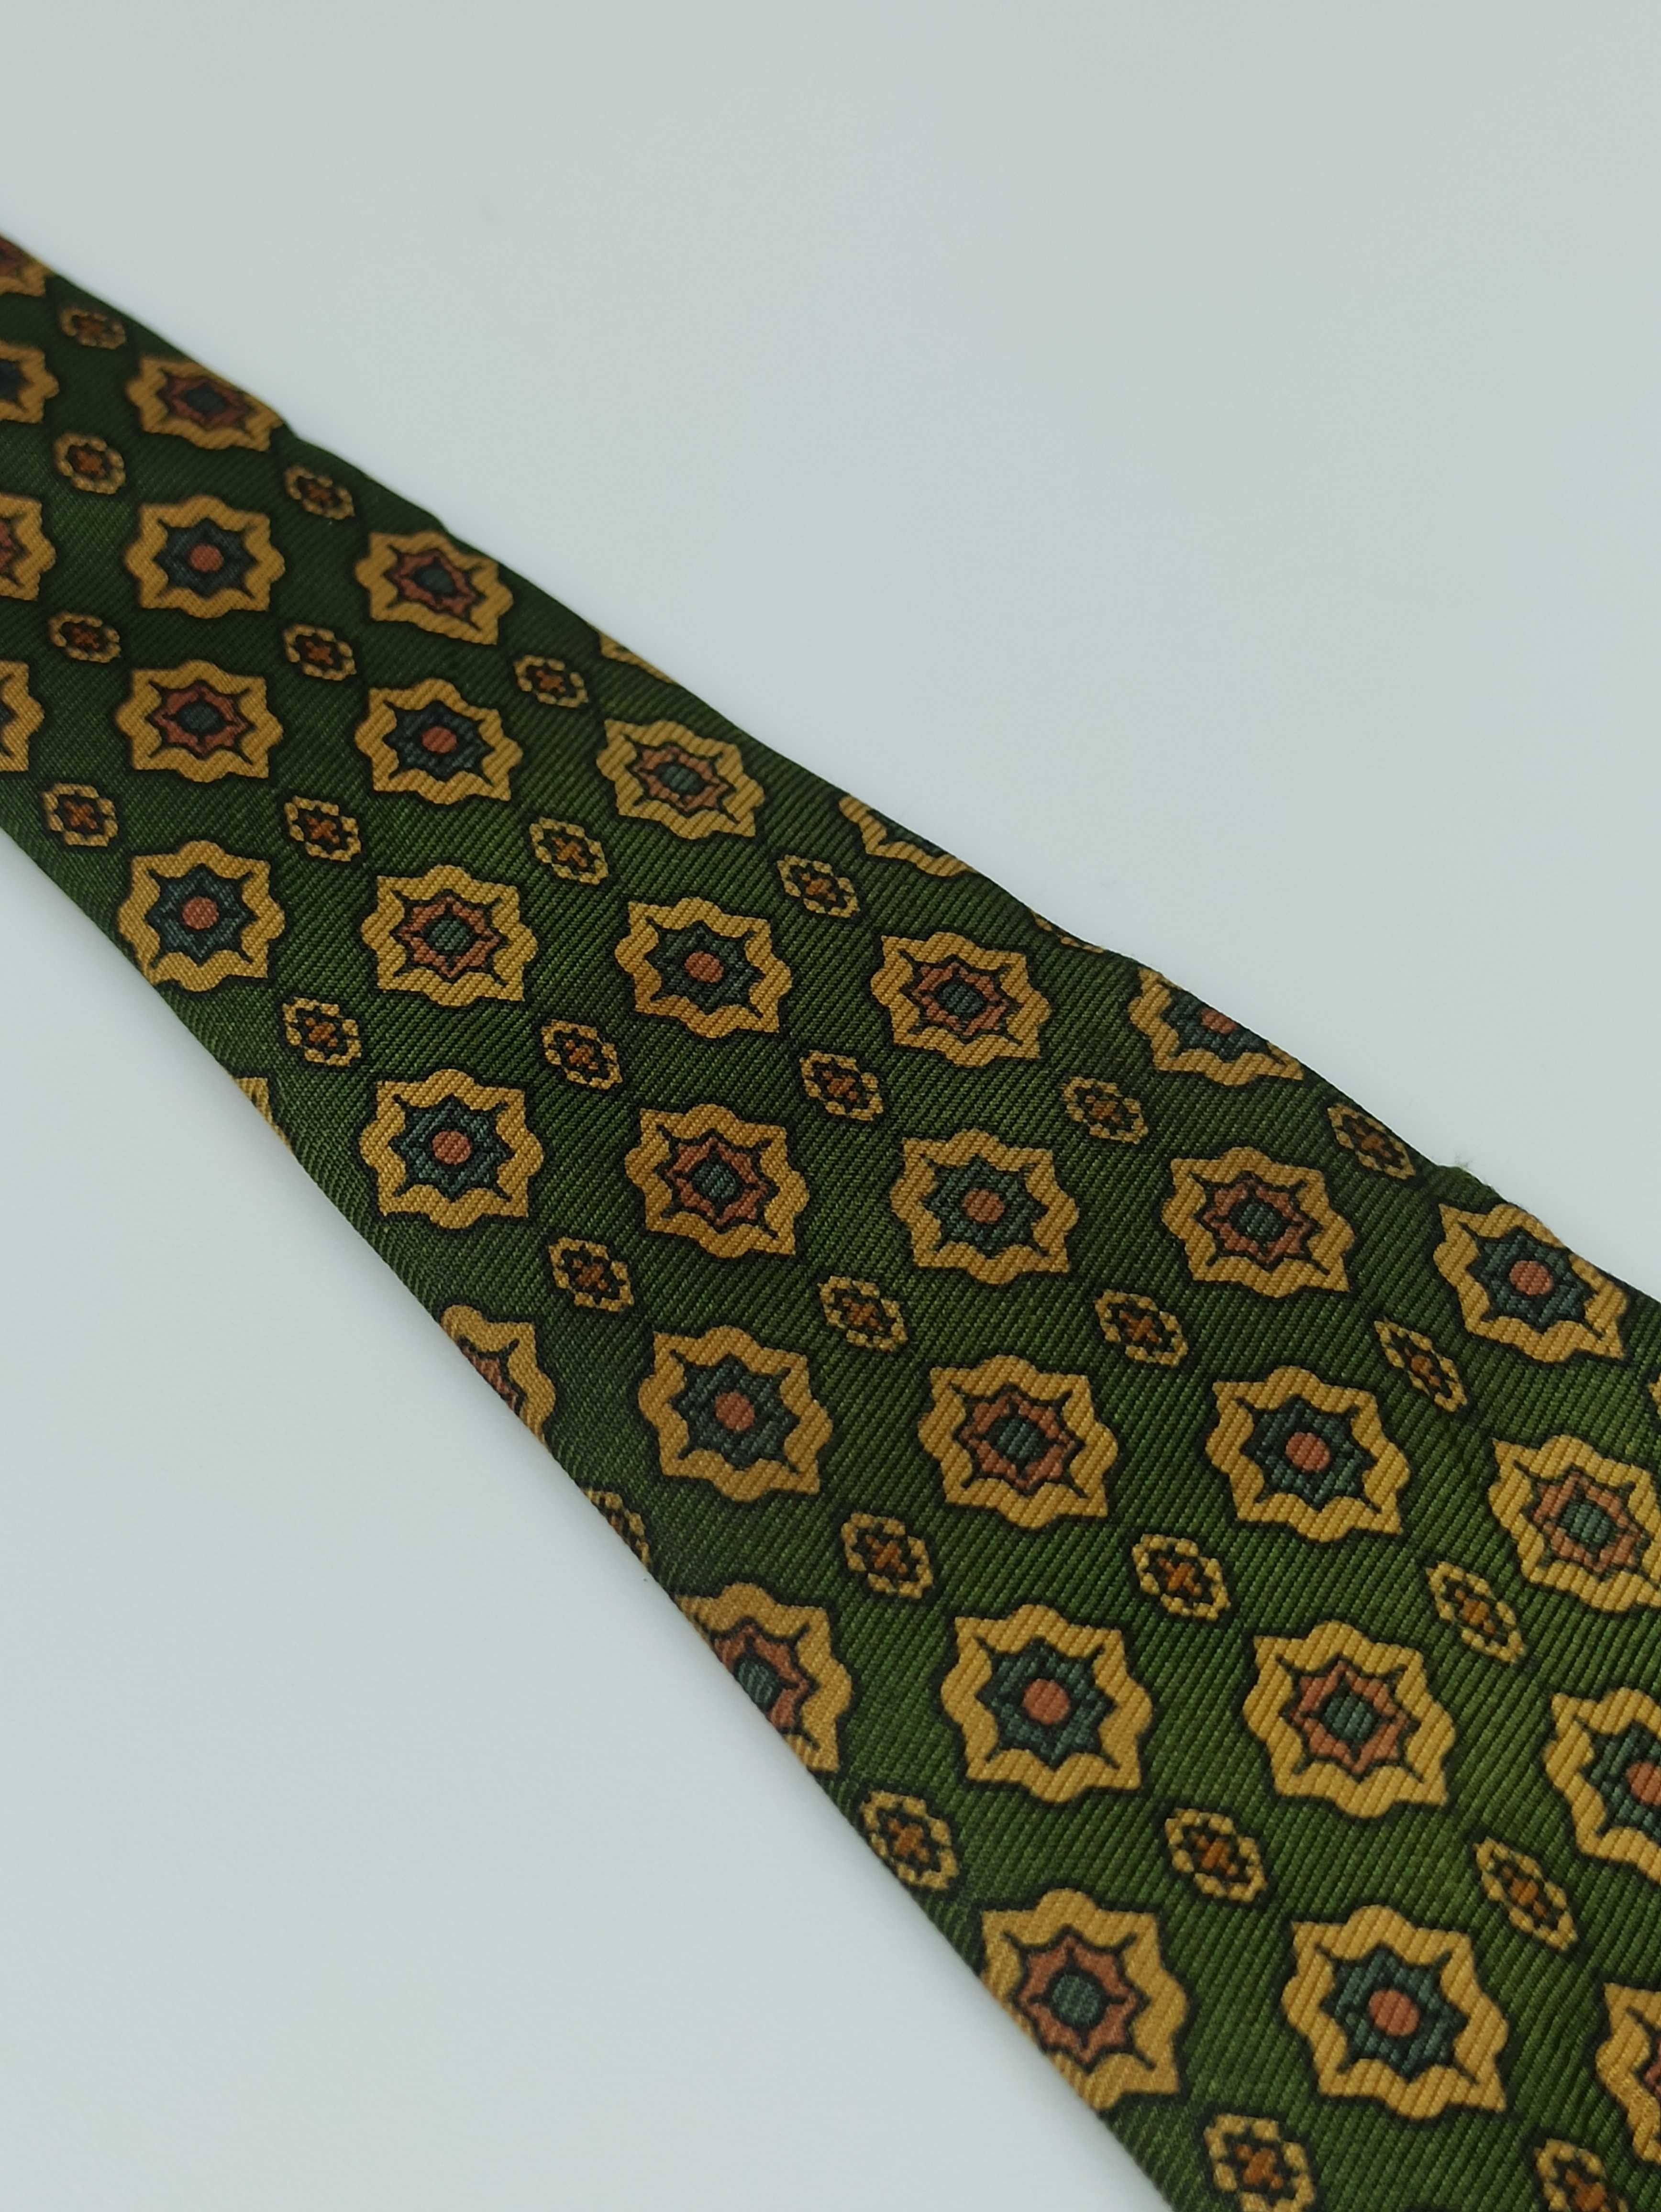 Harmont & Blaine jedwabny krawat zielony kwi06